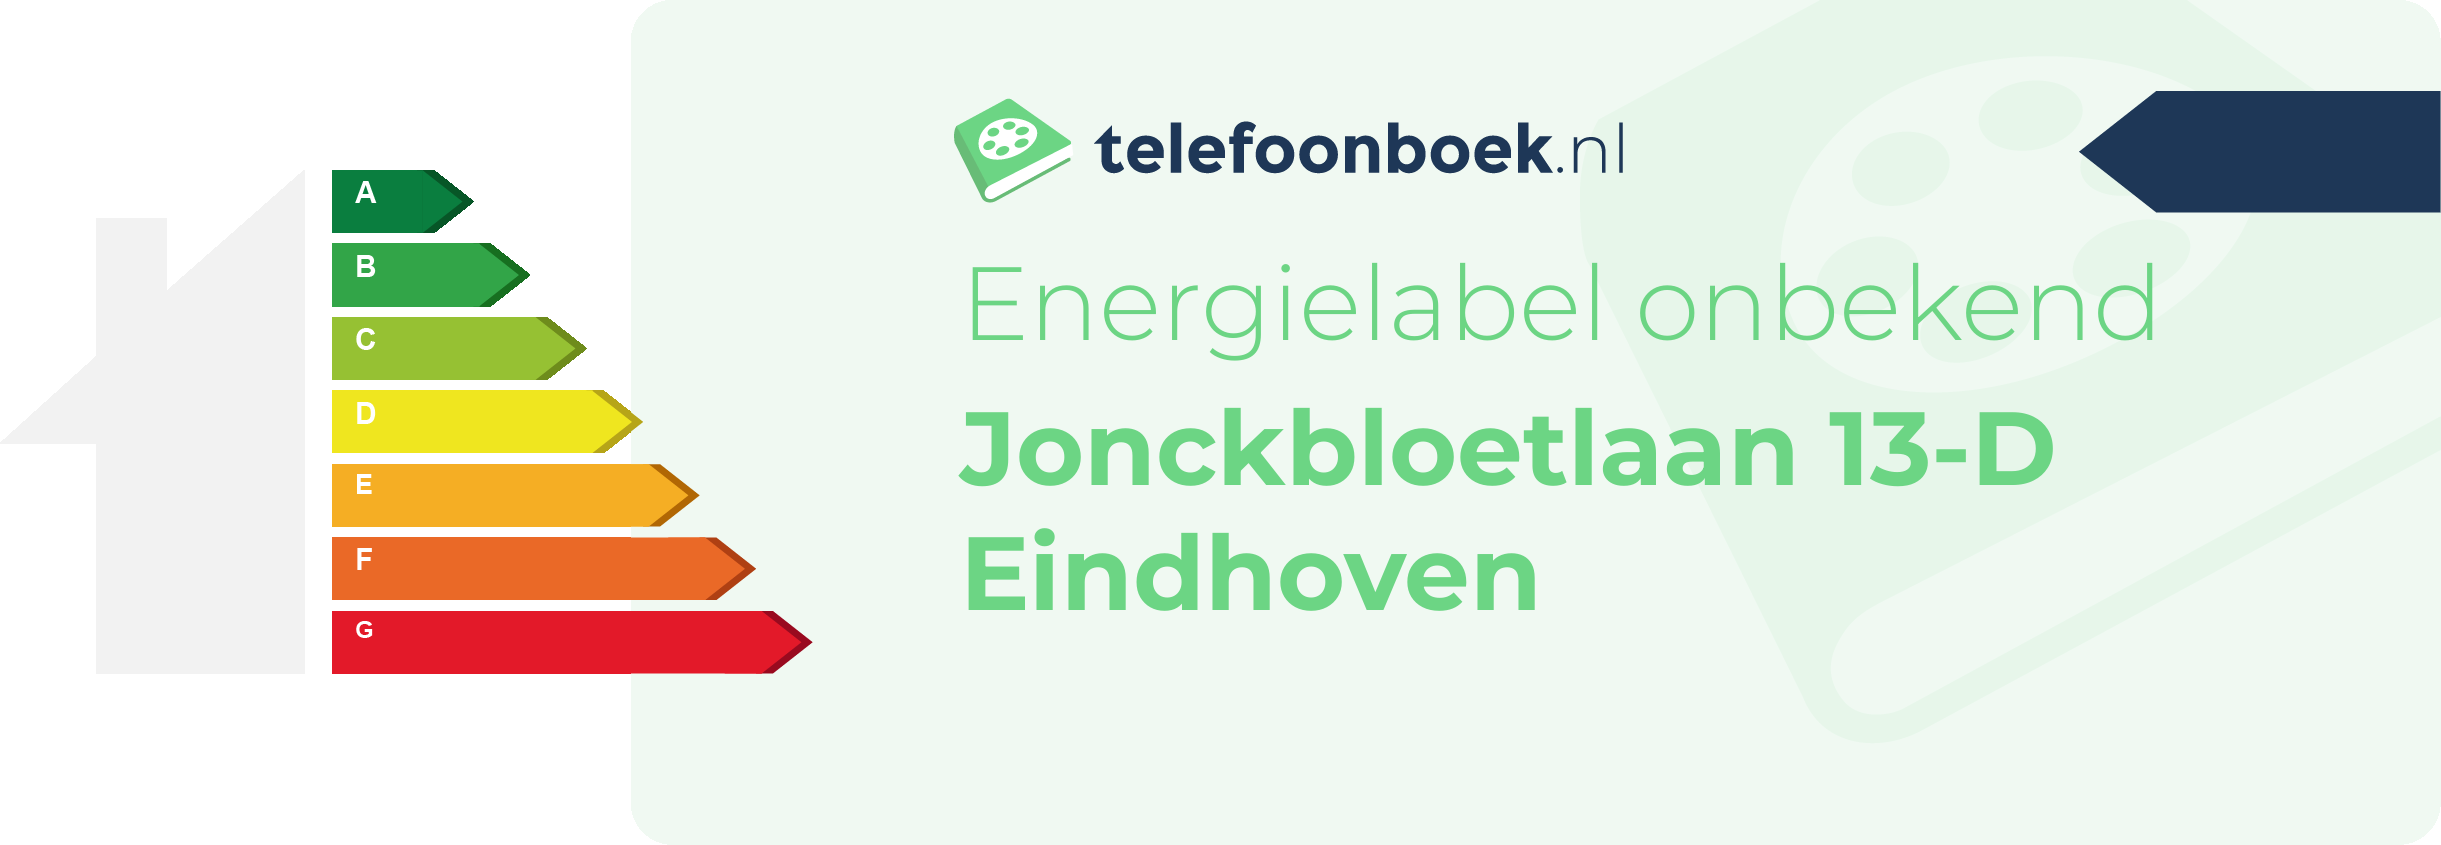 Energielabel Jonckbloetlaan 13-D Eindhoven